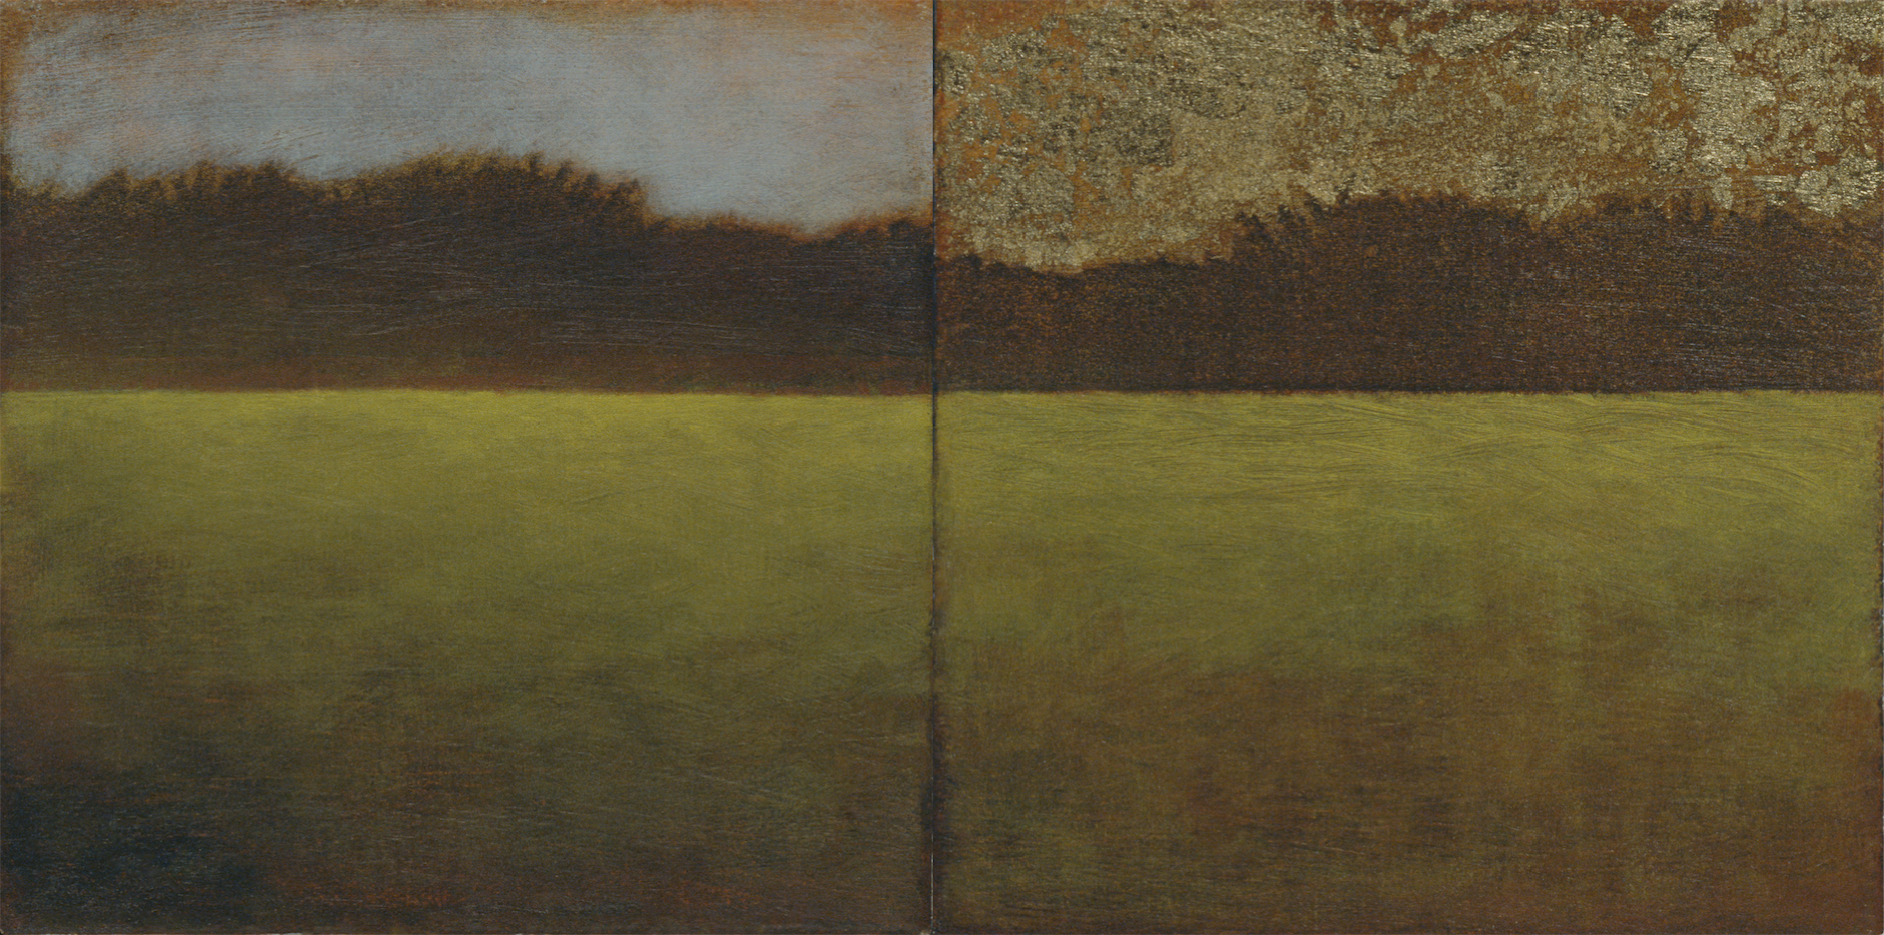 Diptych - oil on canvas - 5x5" (each) 